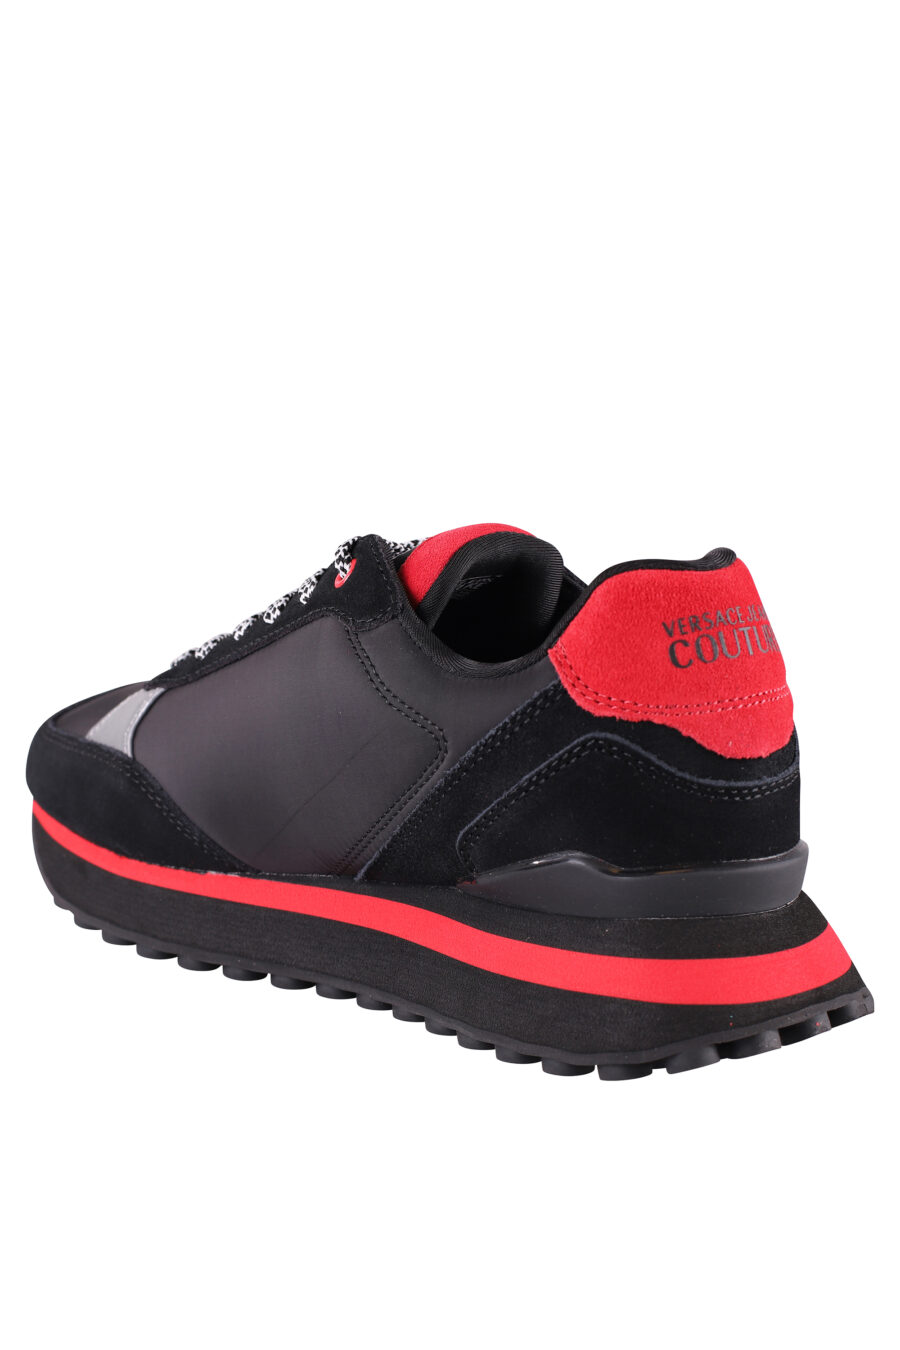 Zapatillas negras y rojas con plataforma y logo plateado - IMG 8495